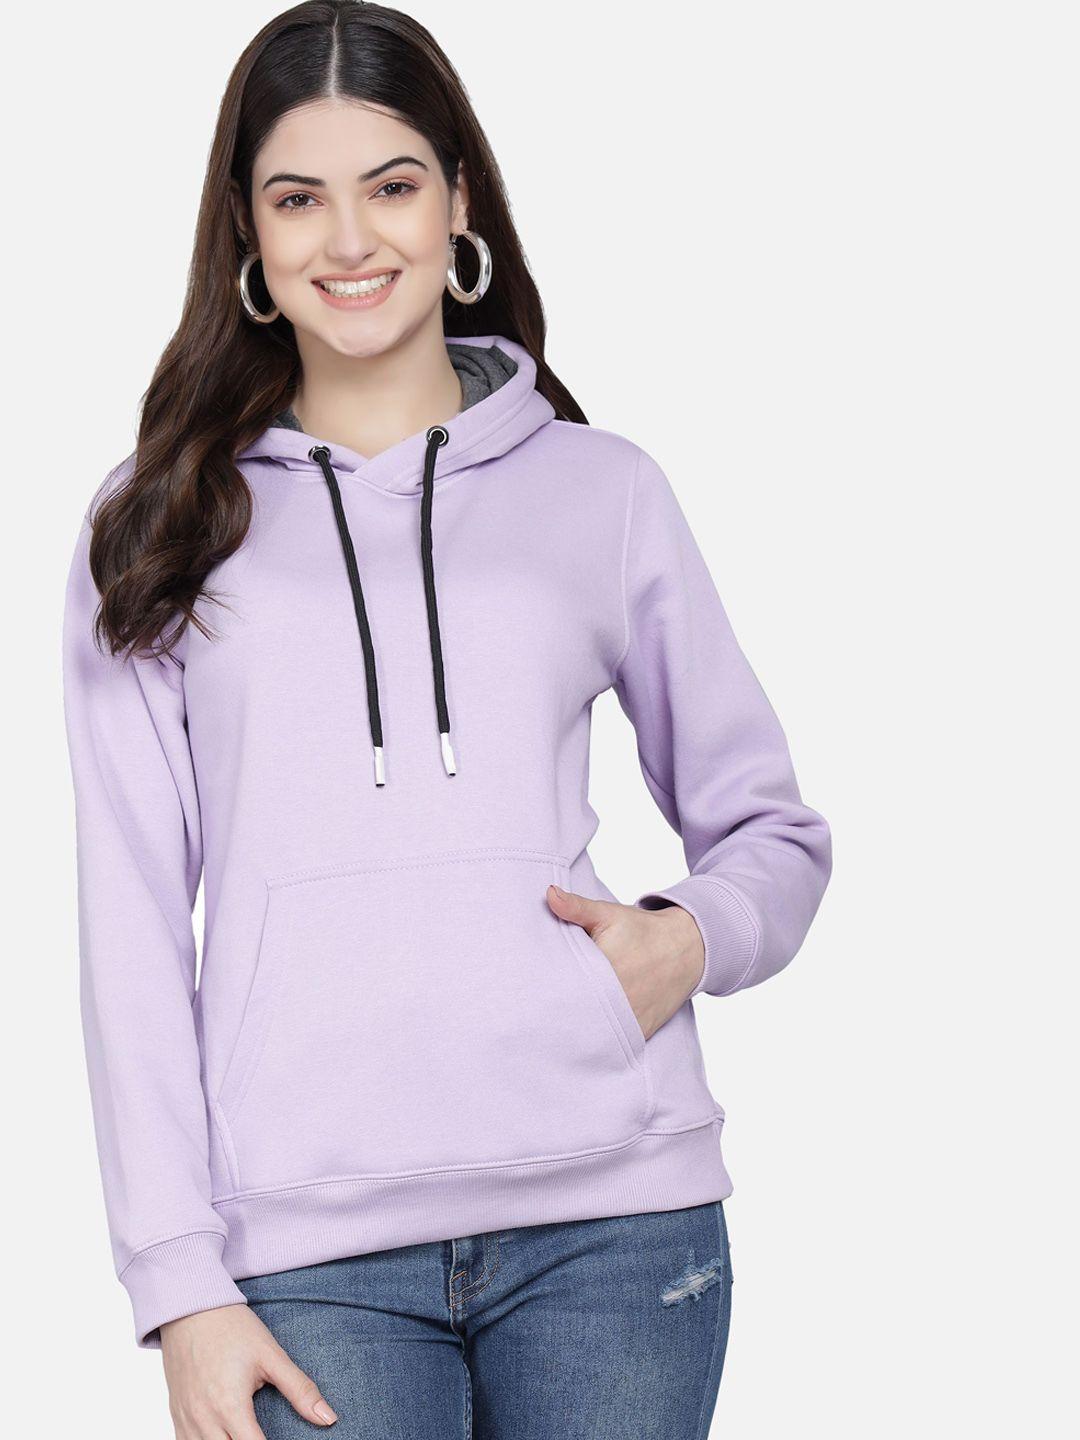 pockman women purple hooded sweatshirt